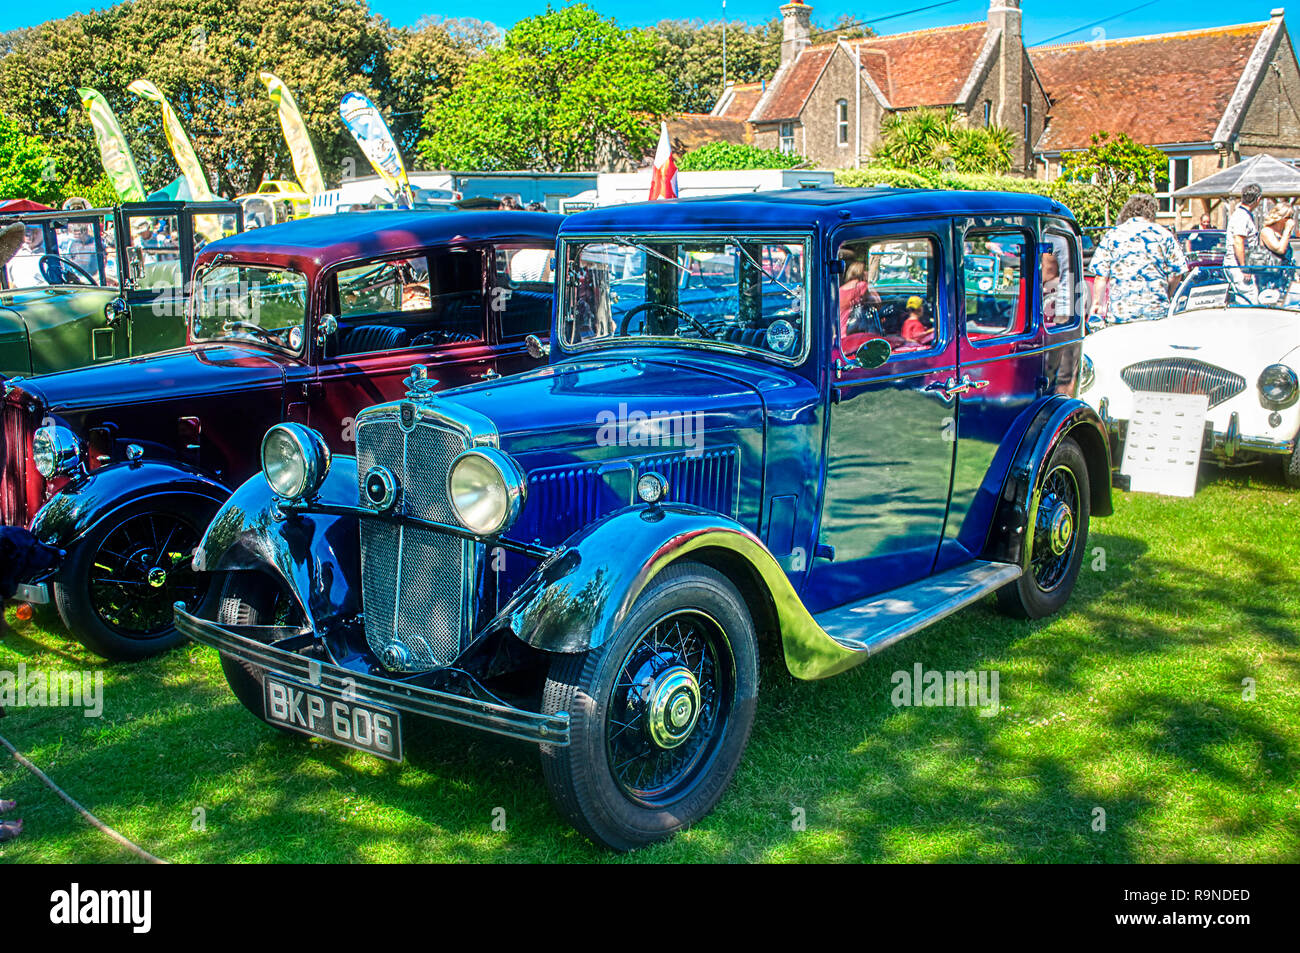 Morris dieci quattro 1935 auto d'epoca, reg. n. BKP 606 sul display in classic car show al vecchio adesivo telato del Festival, Yarmouth, Isola di Wight Foto Stock